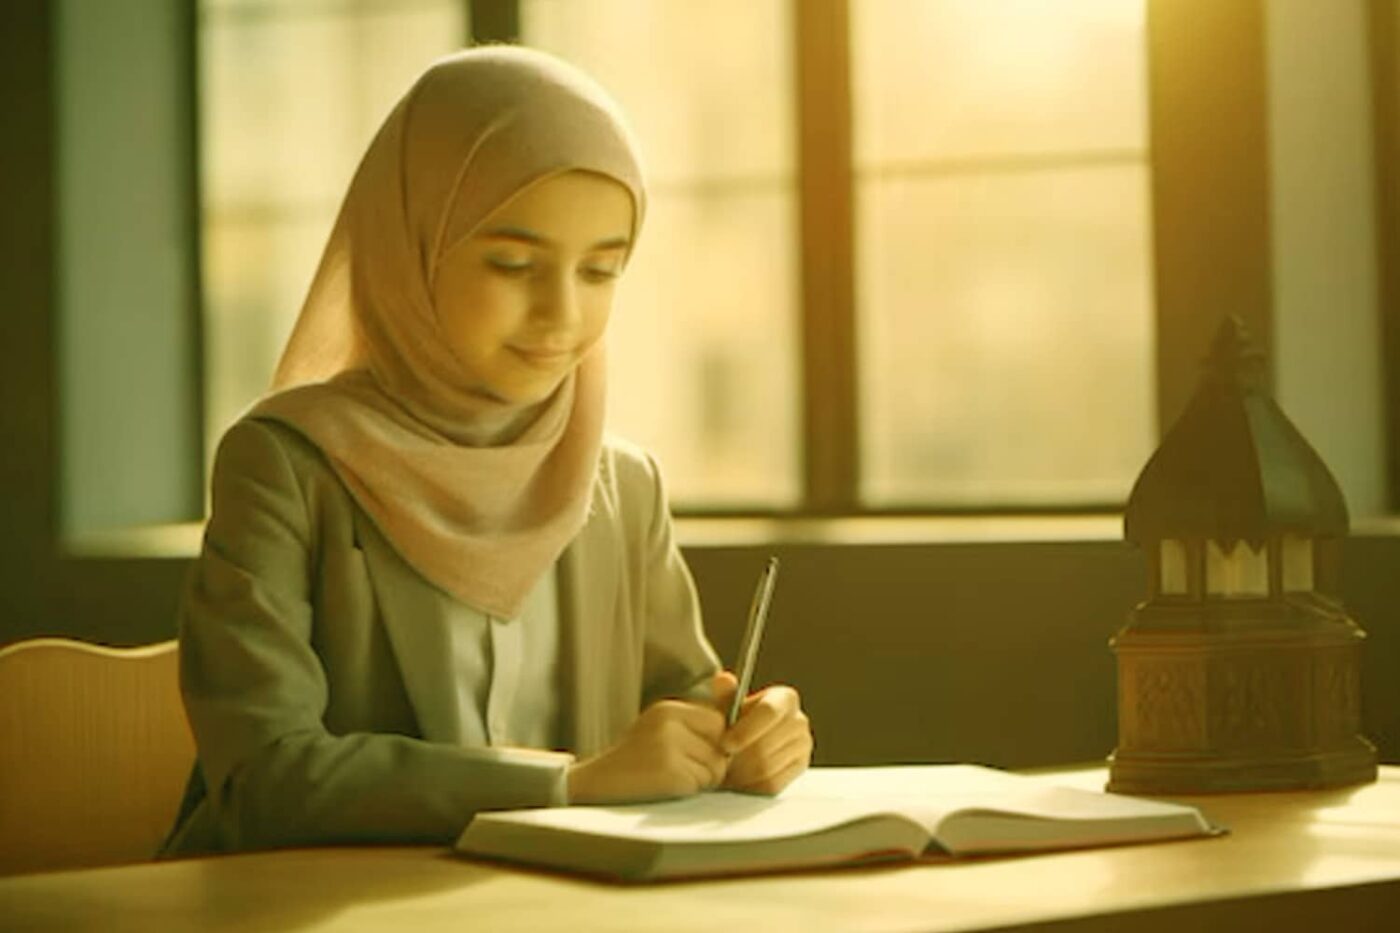 Education of Women in Islam